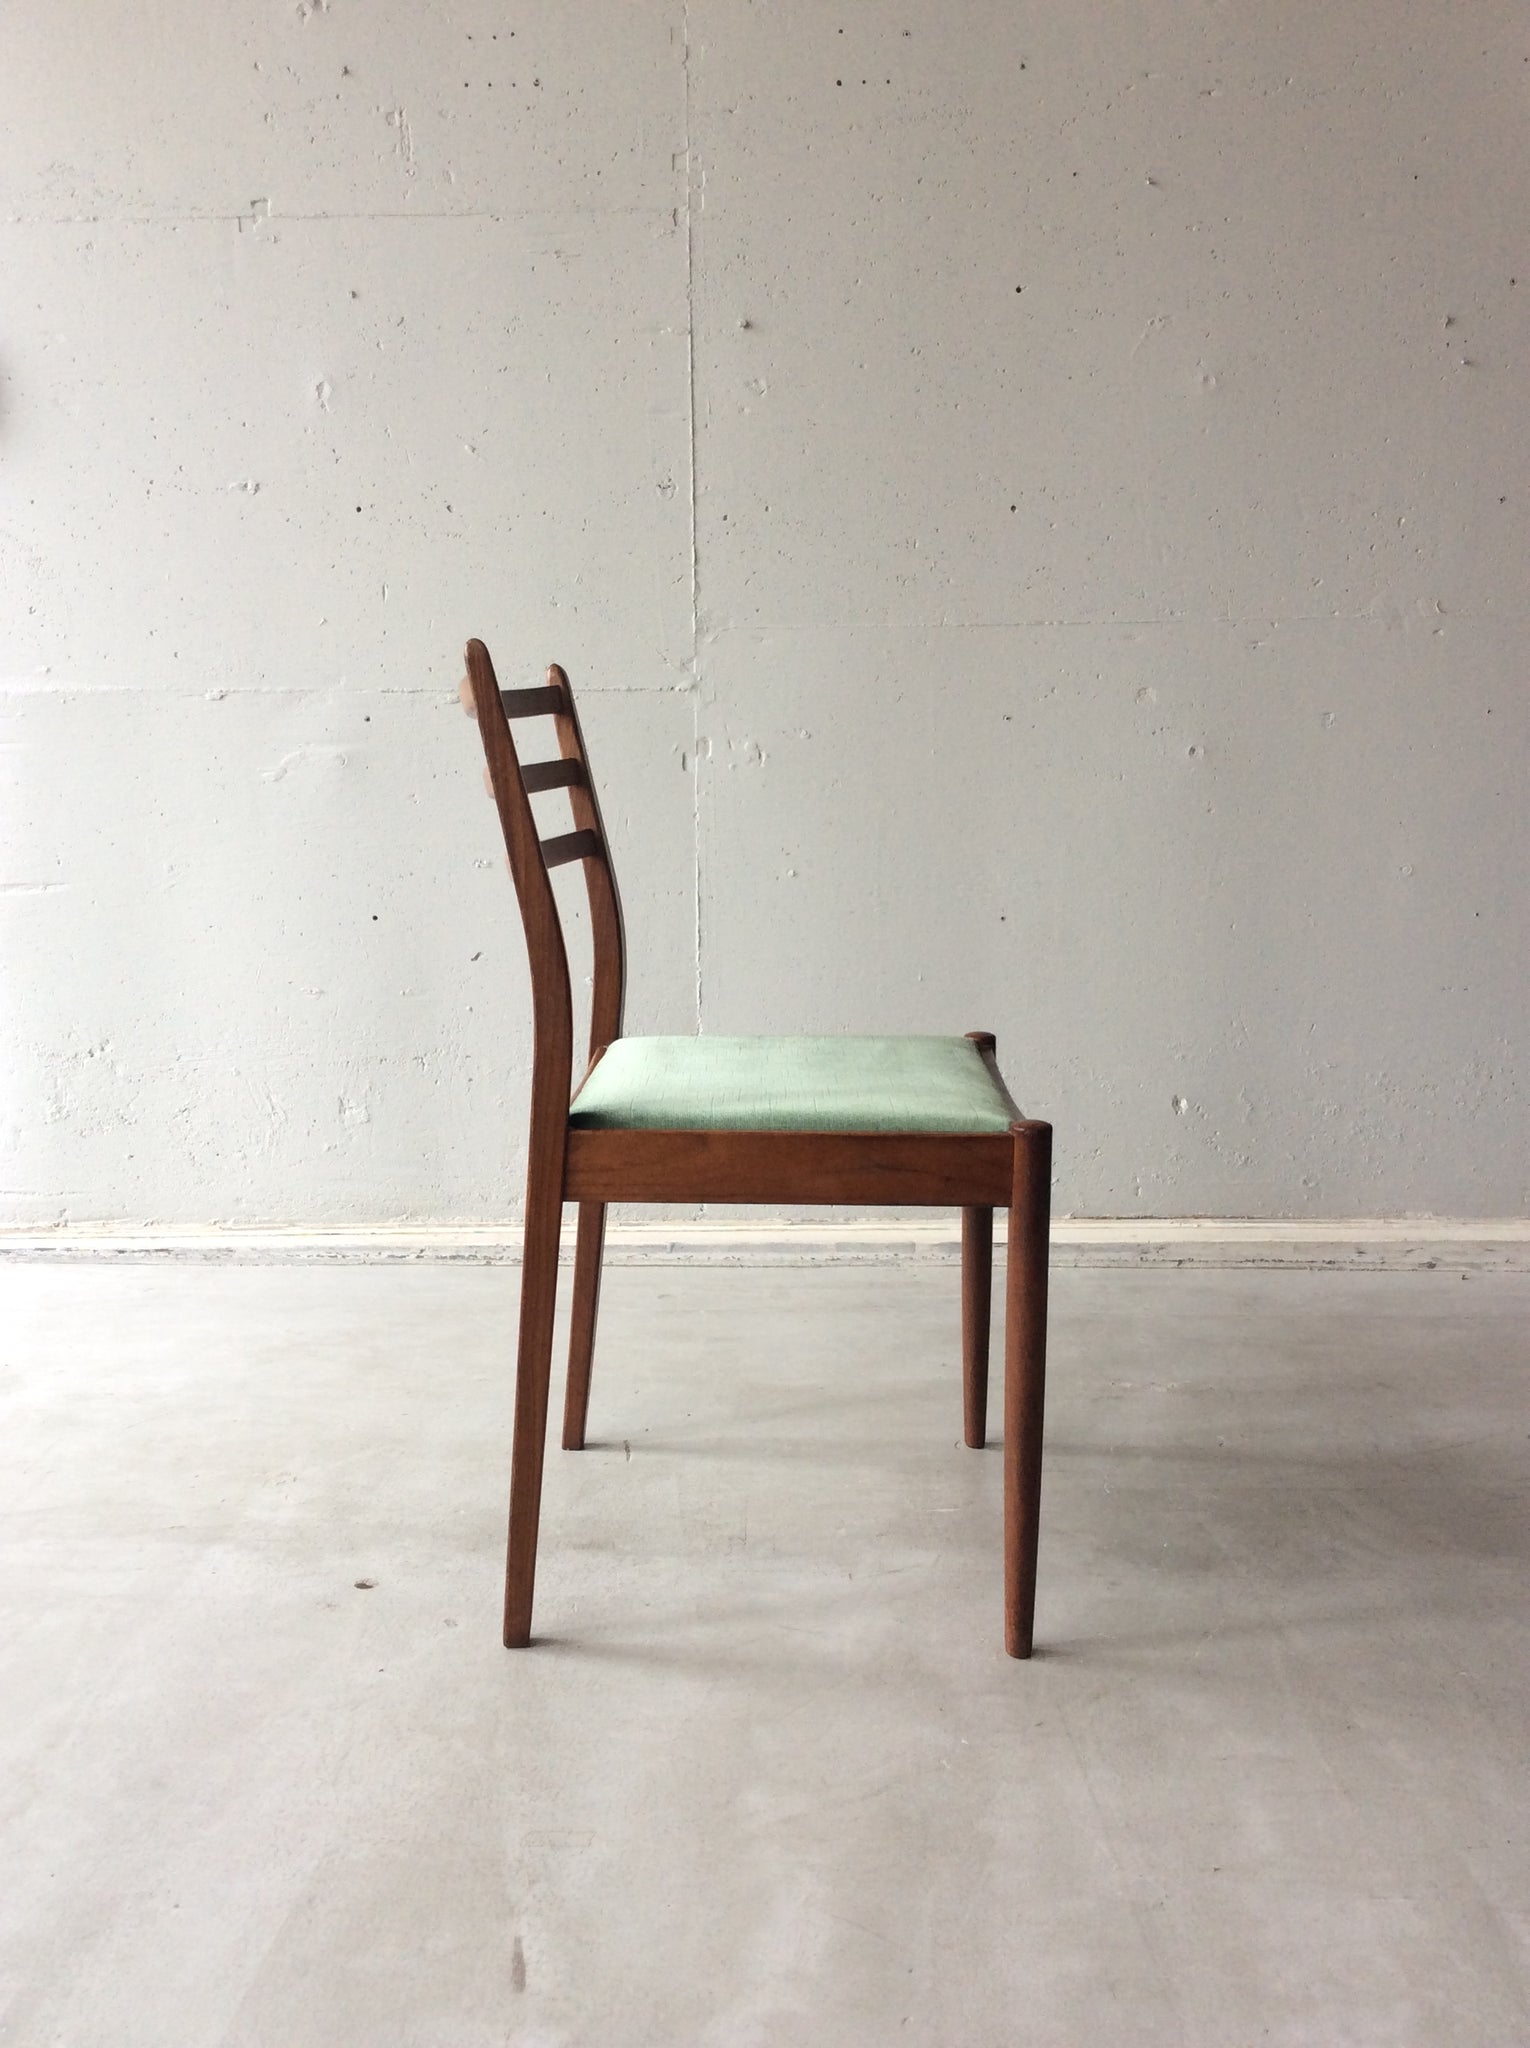 ジープラン チェア４脚セット / g-plan chairs set of 4 #0199